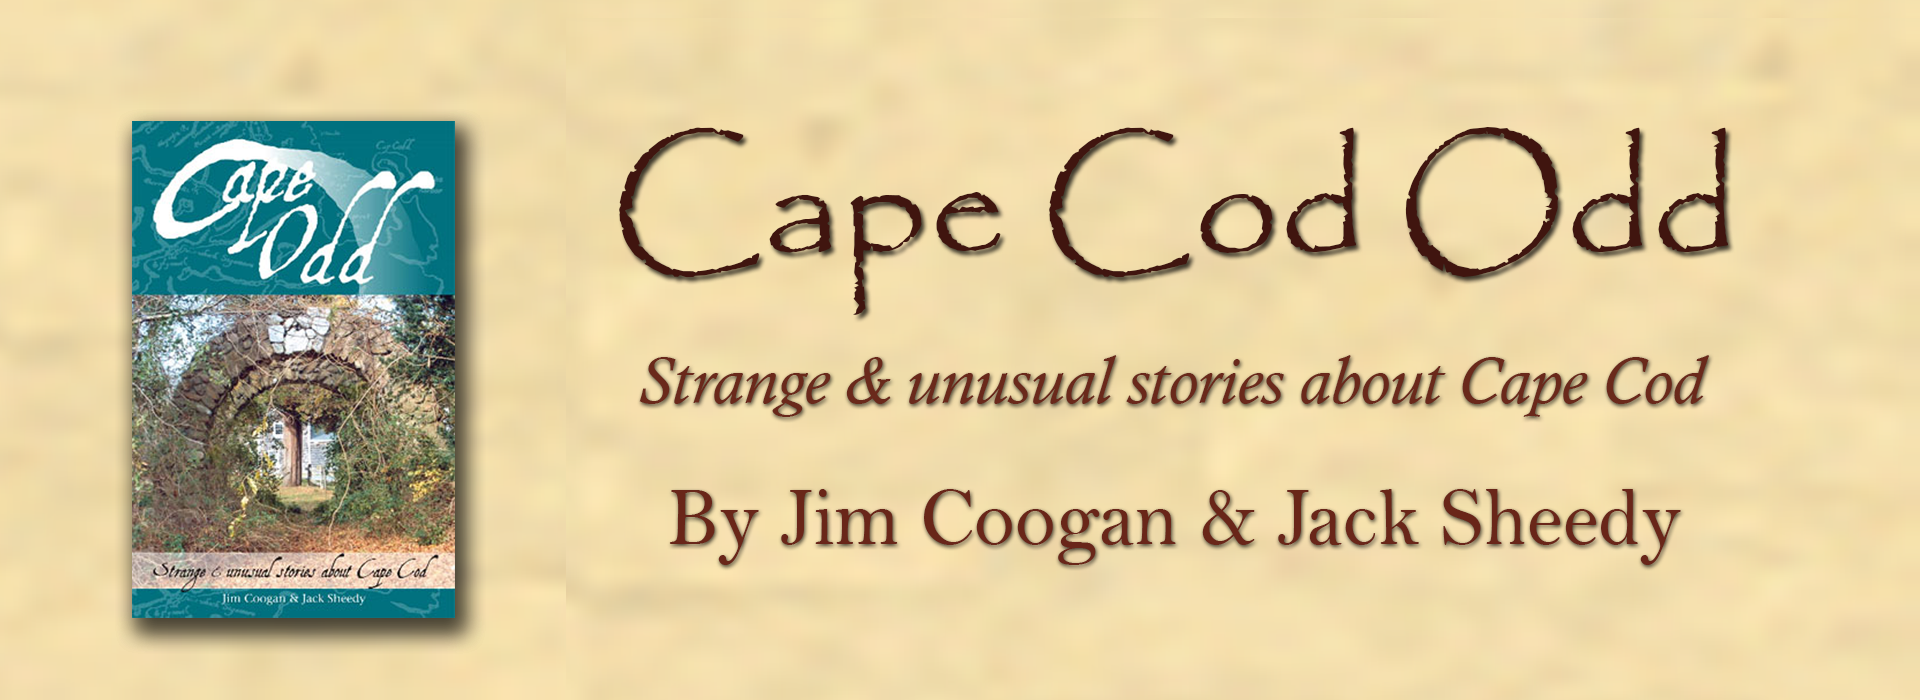 Cape Cod Odd